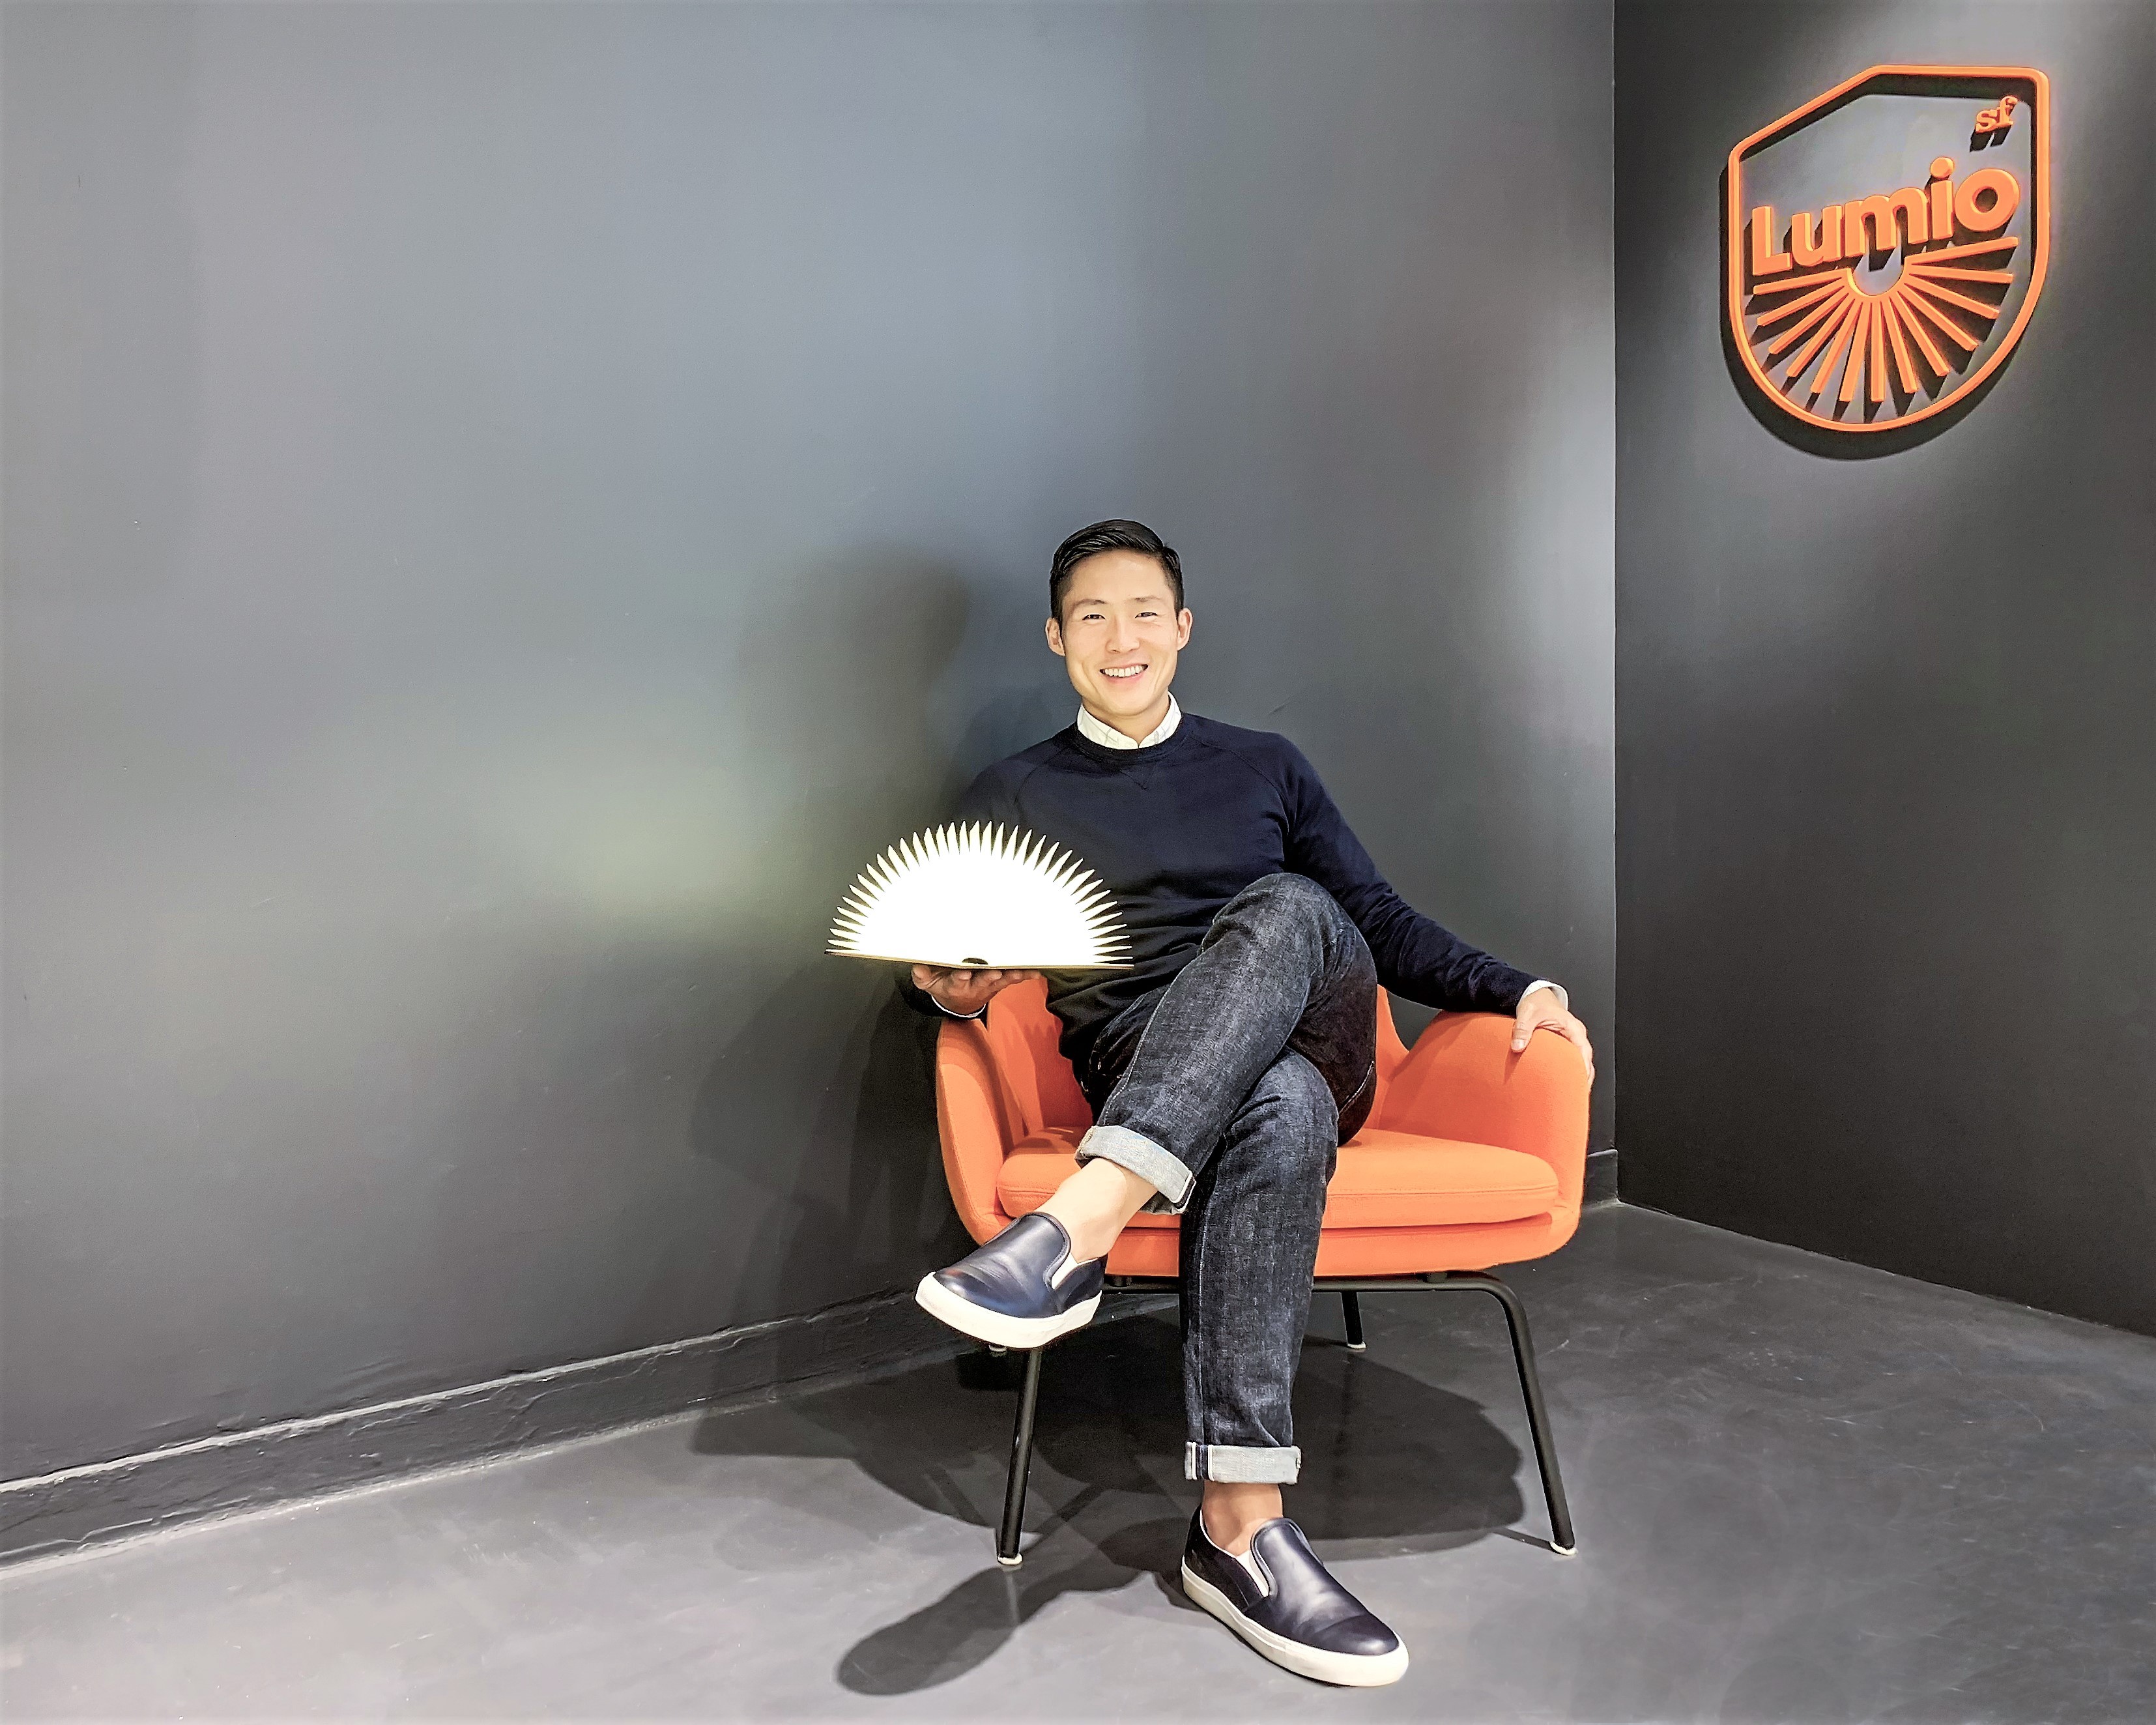 Max Gunawan with a Lumio at their office in Hong Kong.